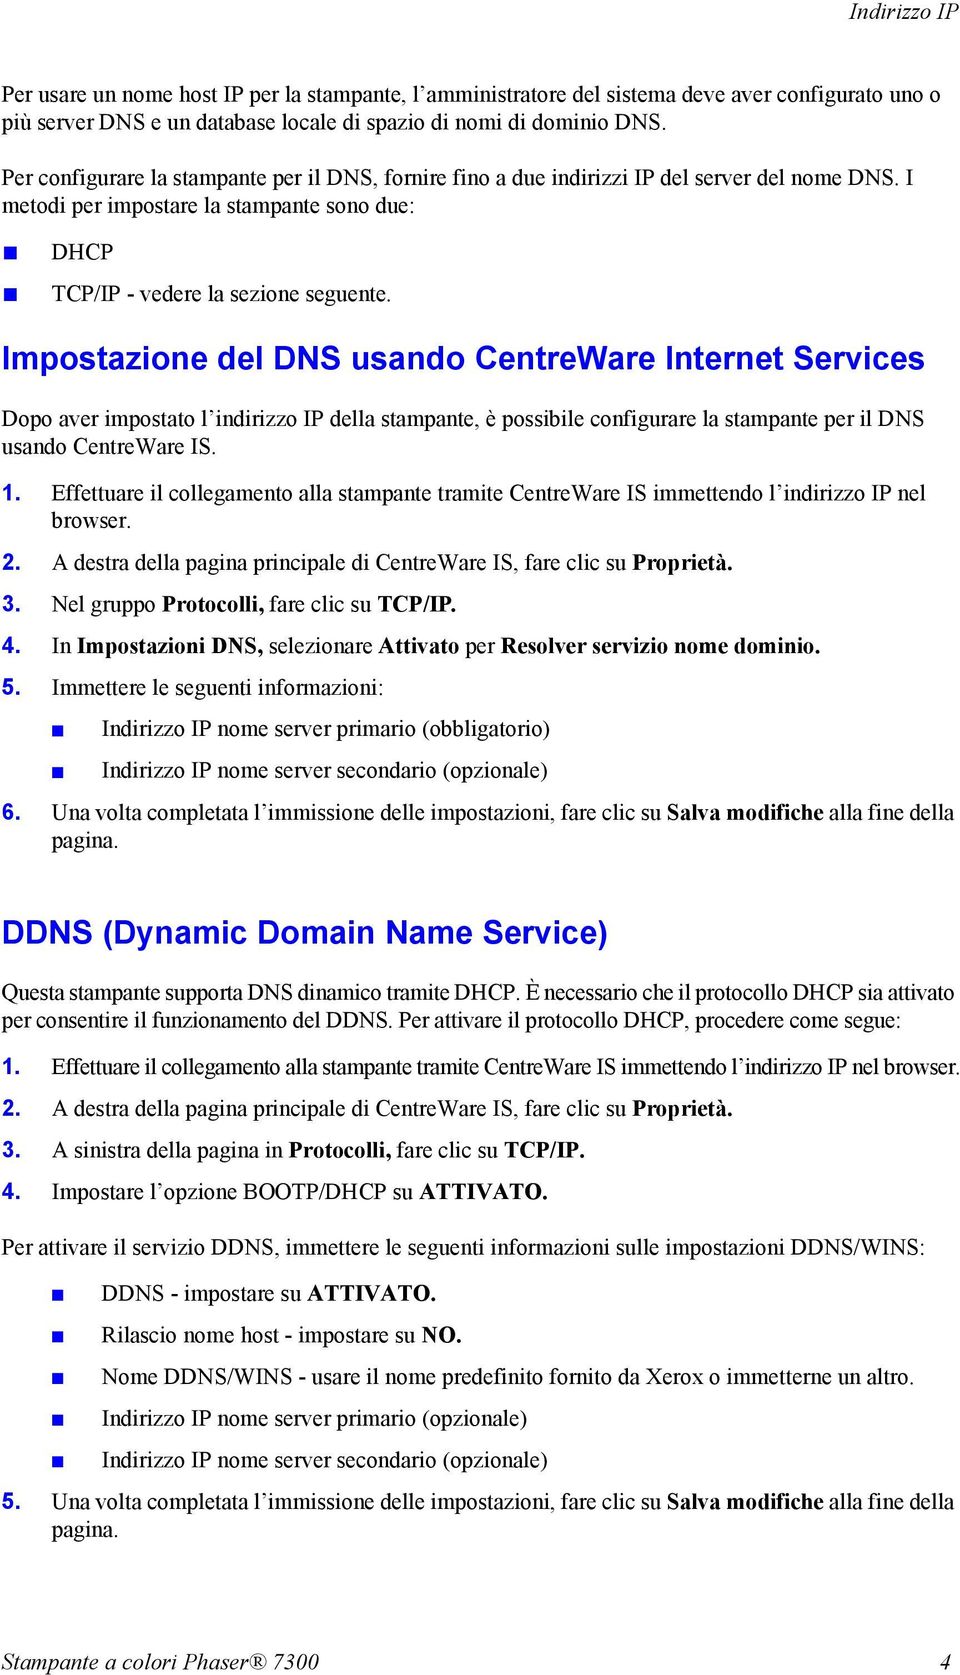 Impostazione del DNS usando CentreWare Internet Services Dopo aver impostato l indirizzo IP della stampante, è possibile configurare la stampante per il DNS usando CentreWare IS. 1.